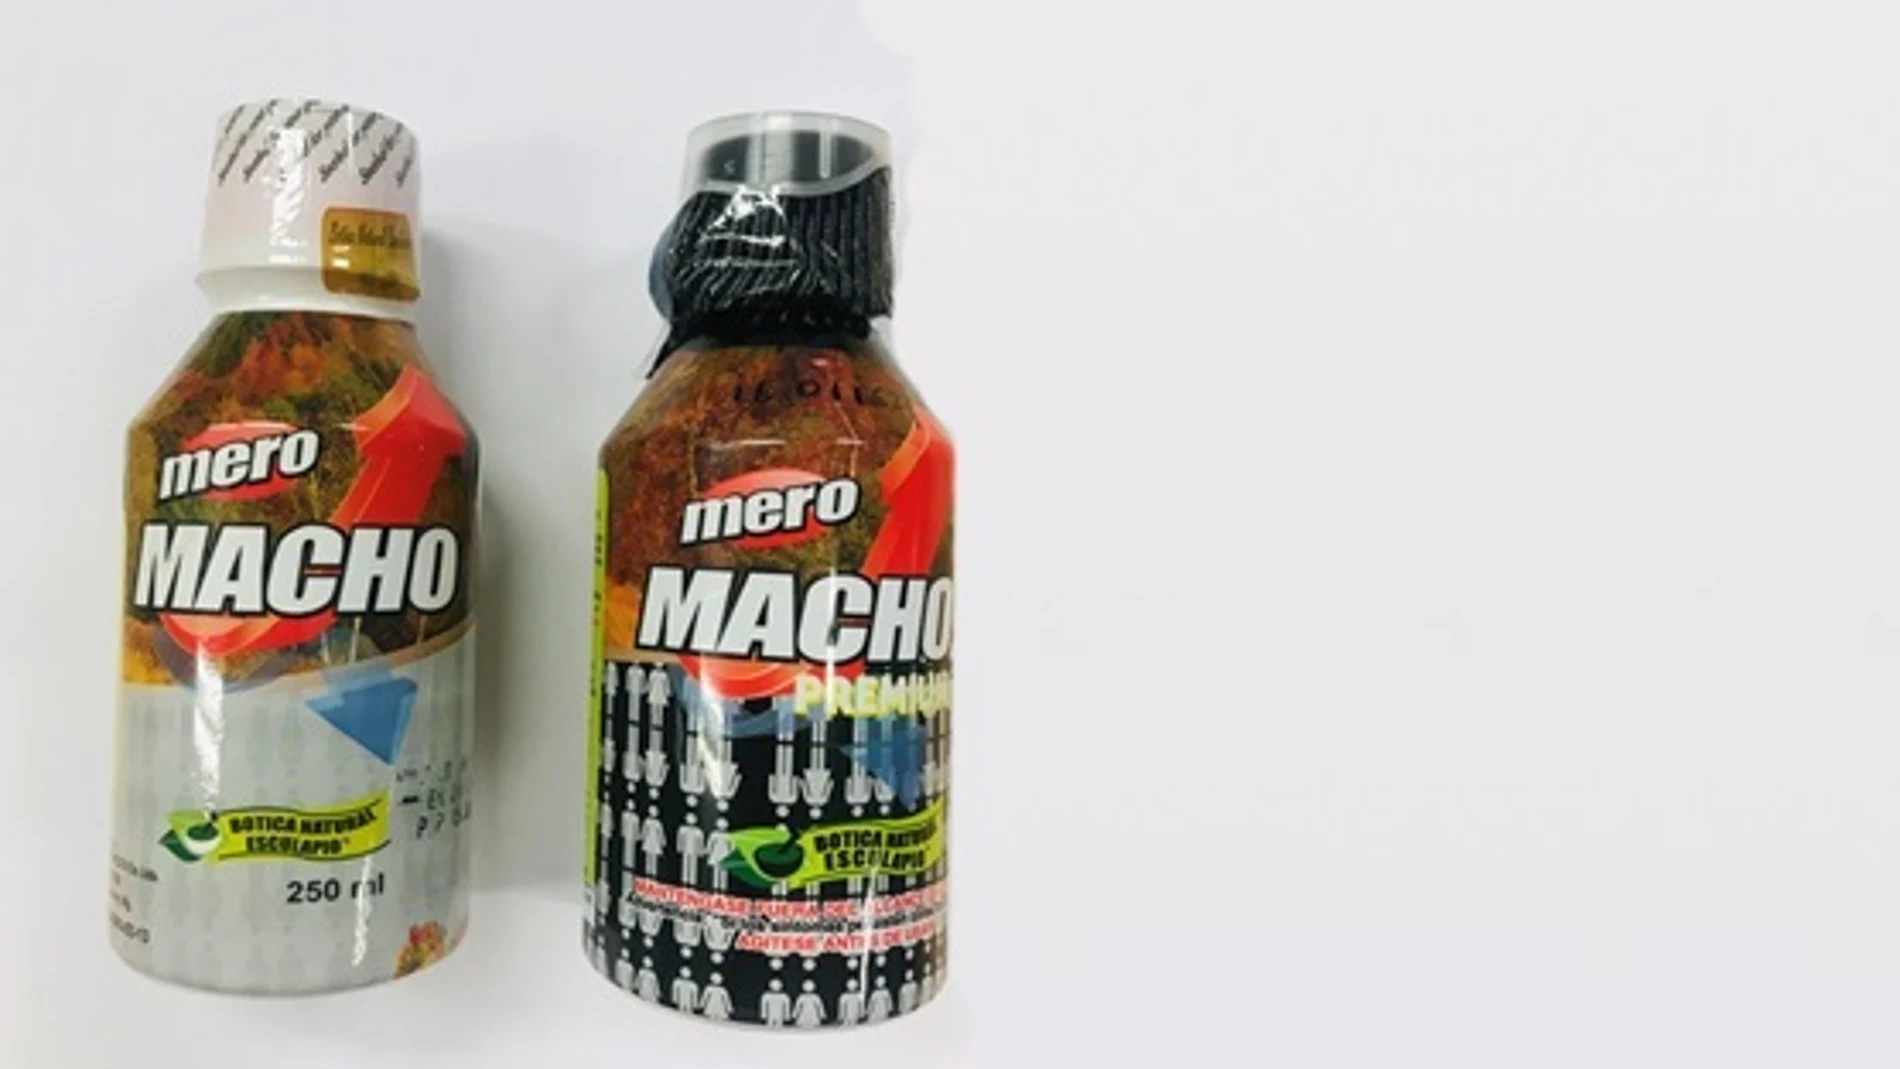 Los productos &#39;Mero Macho&#39; y &#39;Mero Macho&#39;, retirados por la Agencia Española de Medicamentos y Productos Sanitarios (AEMPS) 